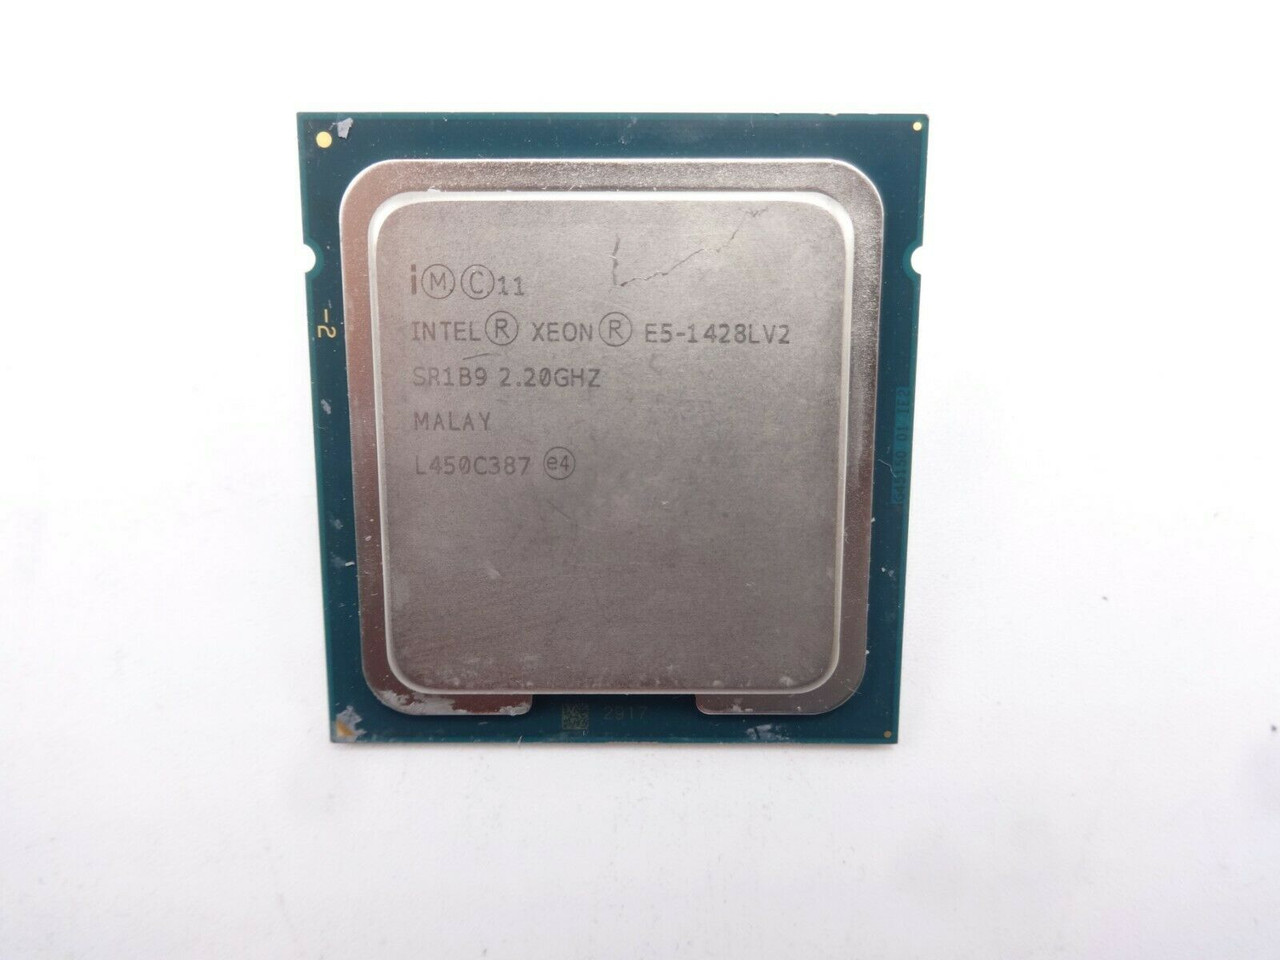 Intel Xeon SR1B9 6 Core E5-1428L V2 2.2Ghz 6C Processor chip